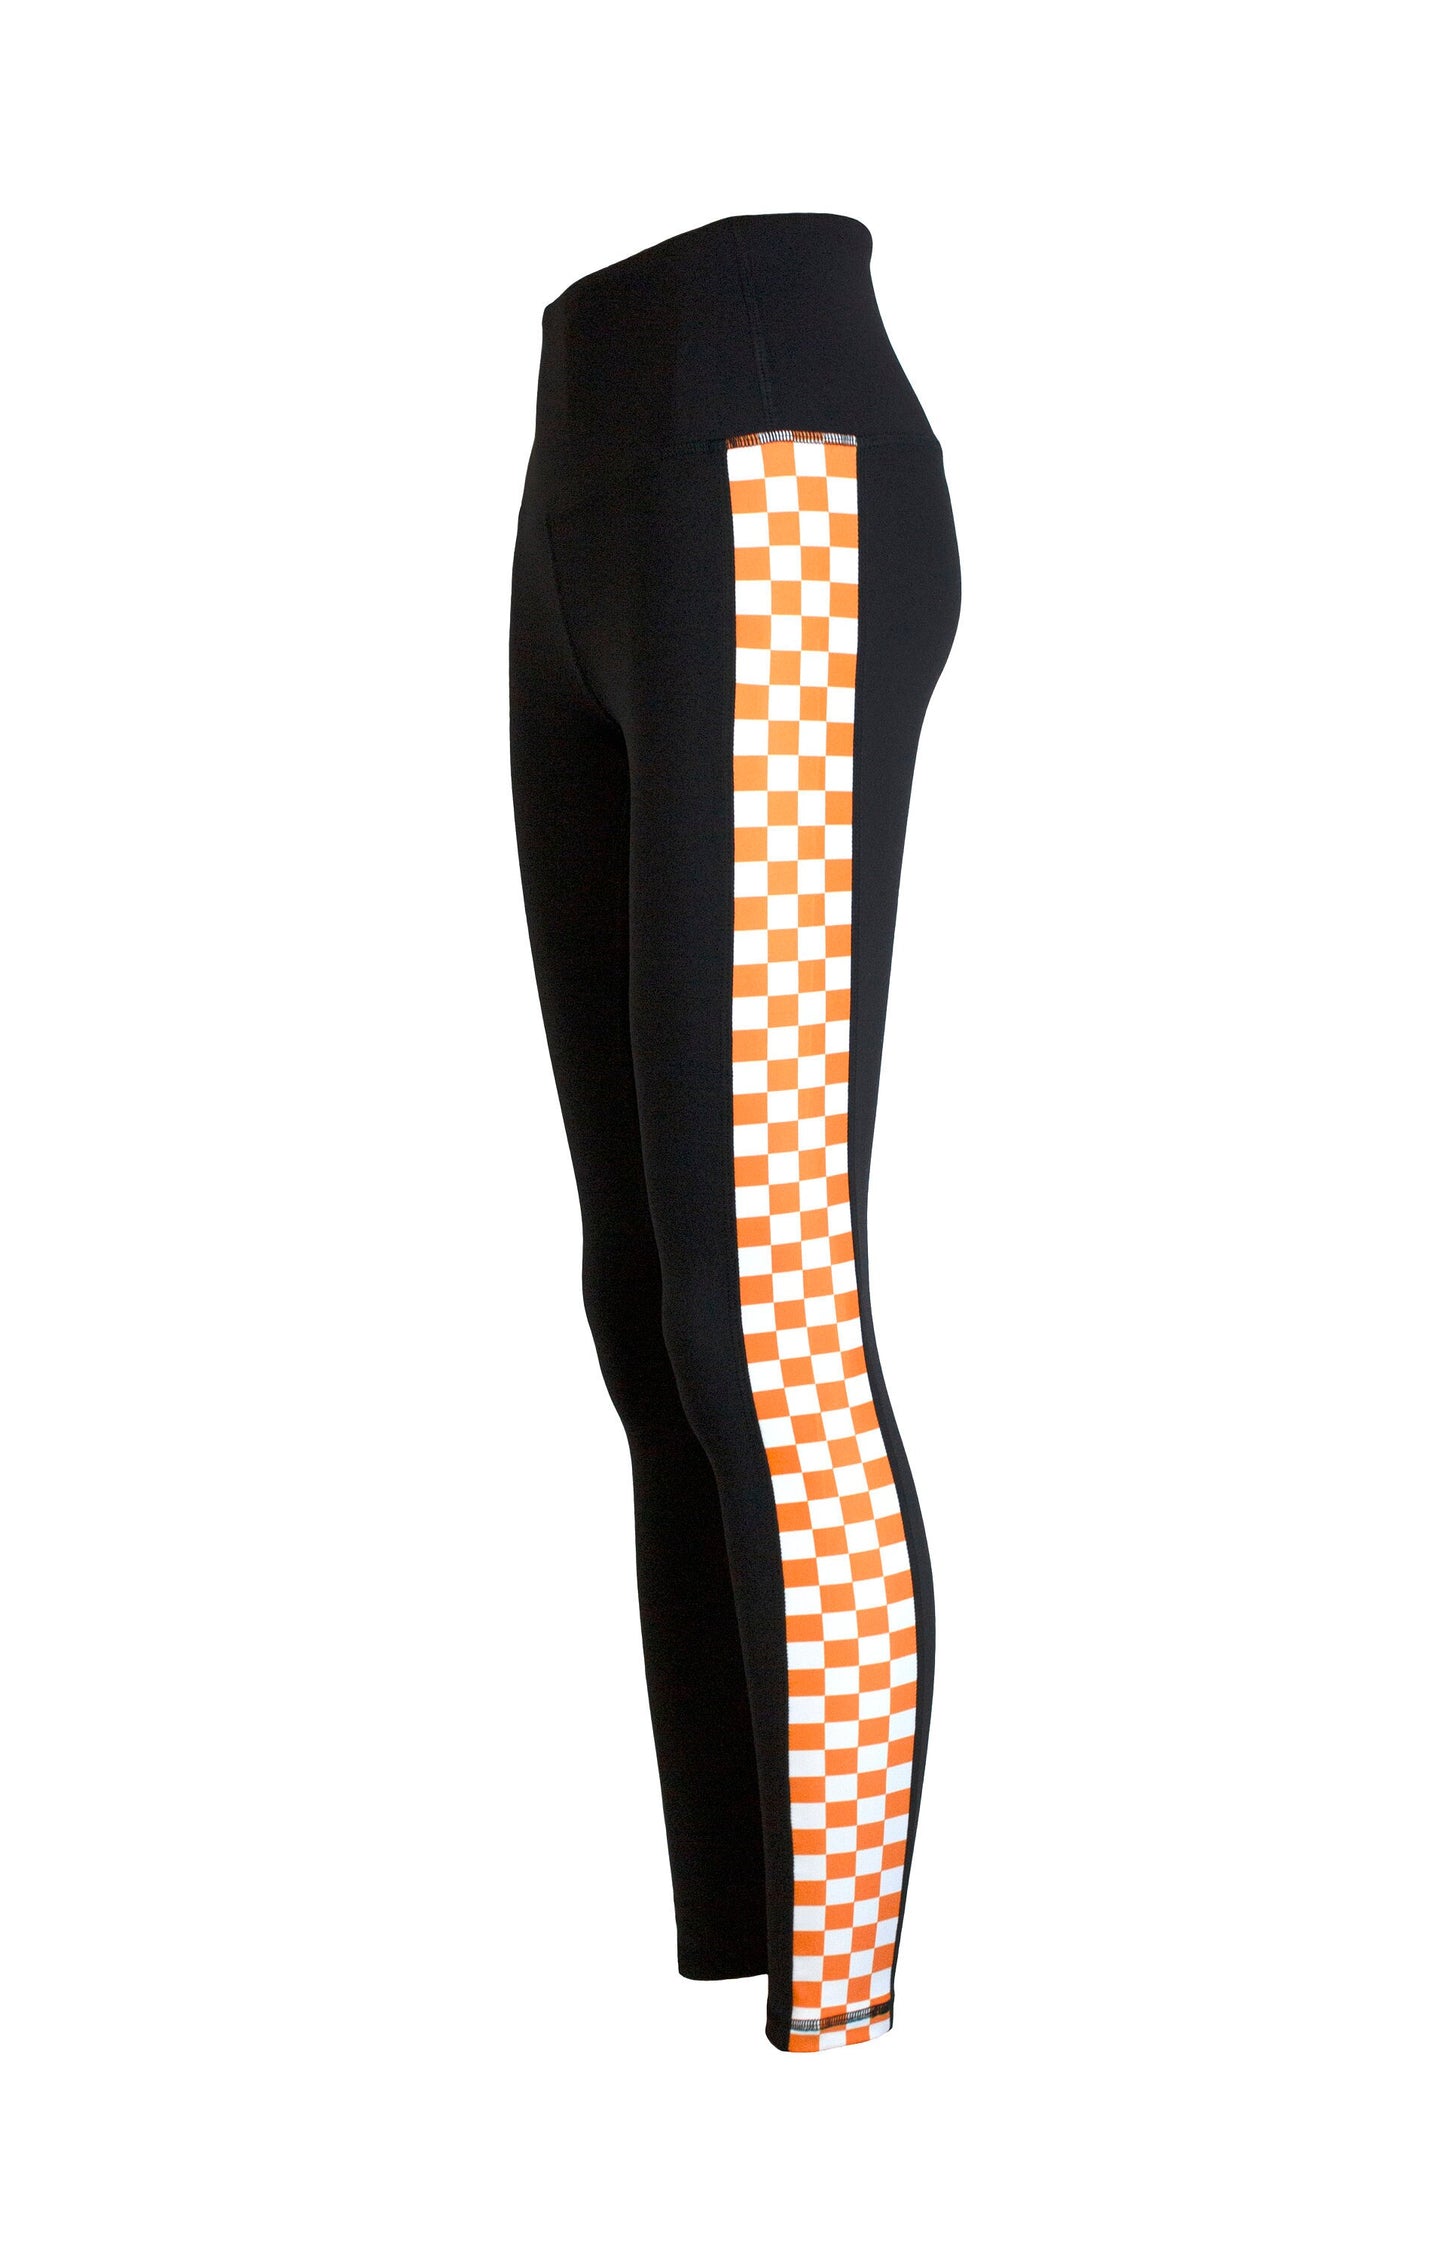 Orange and White Checkered Print Women's Full Length Yoga Pant Leggings